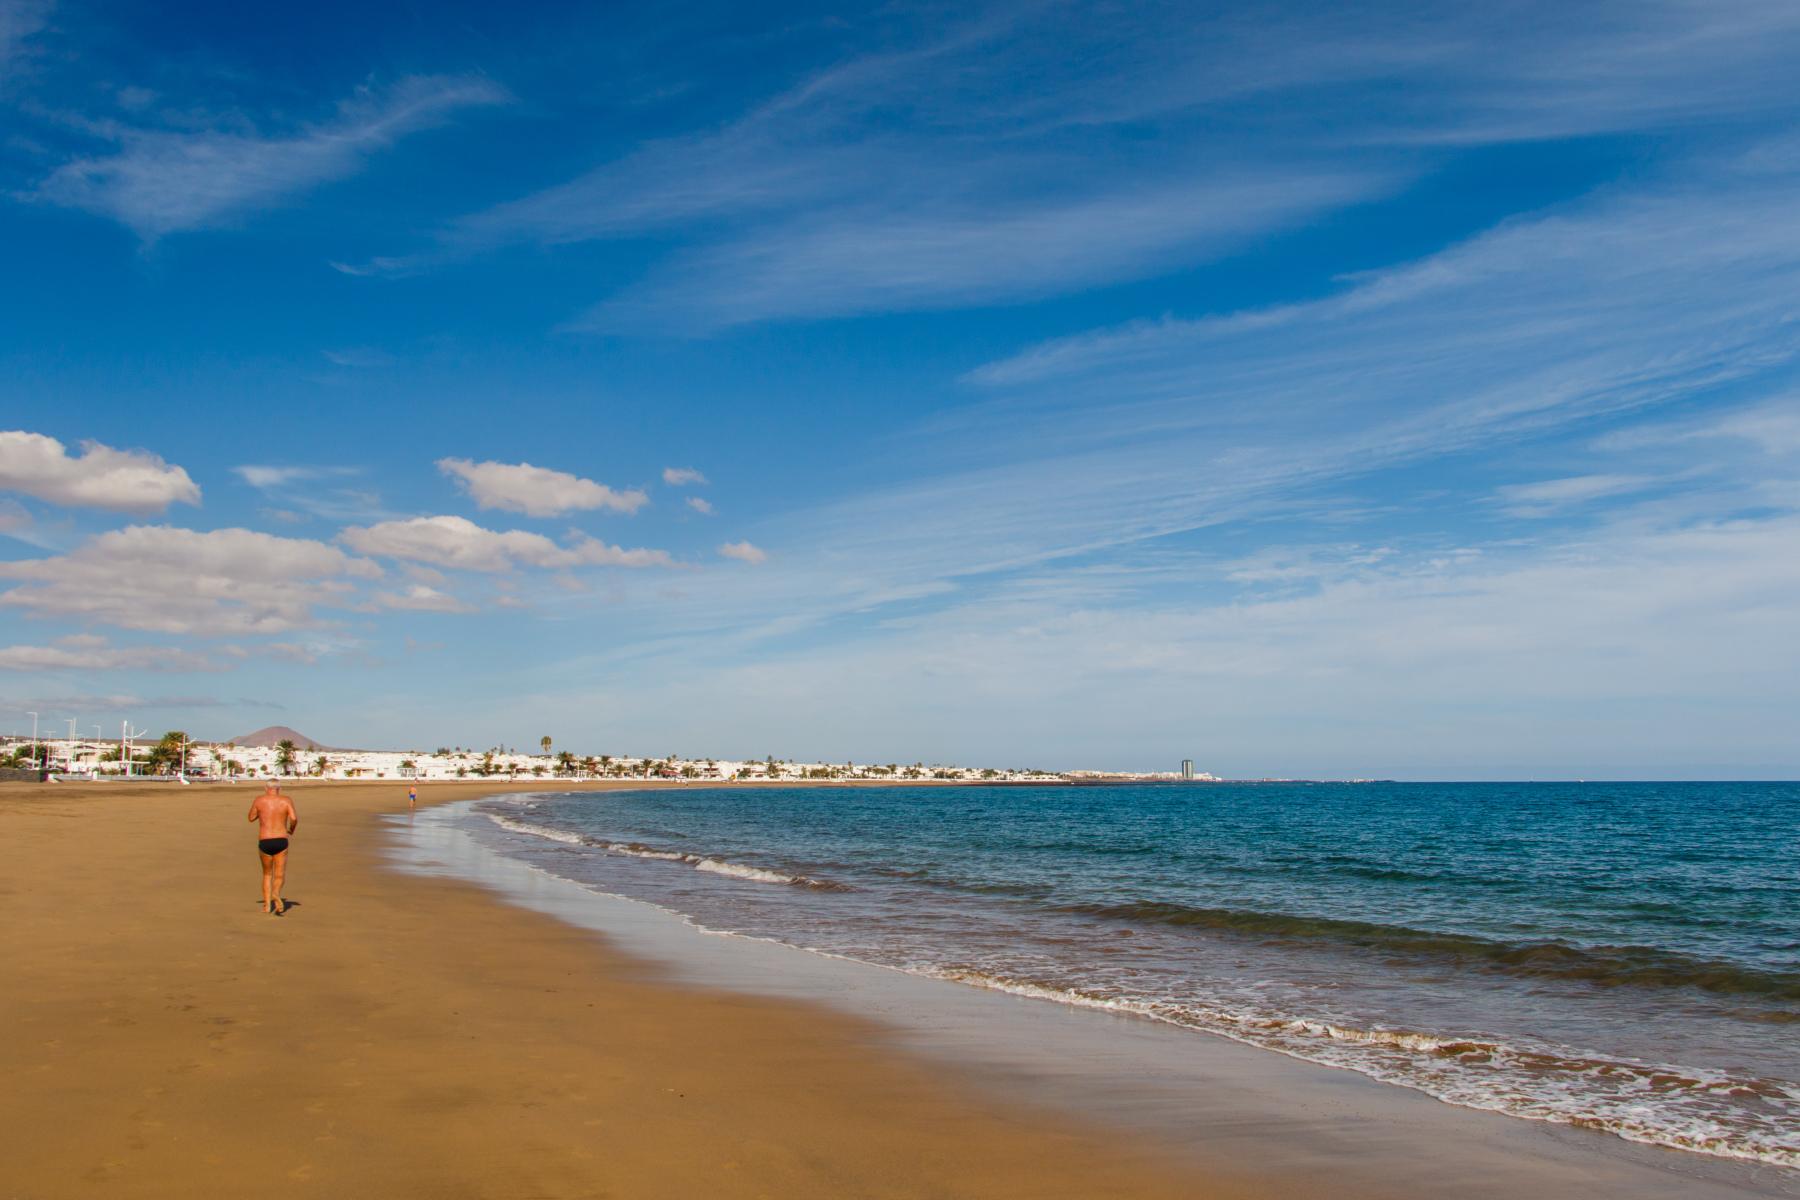 Pláž Guacimeta, nemyslitelný výhled z relaxačního písku